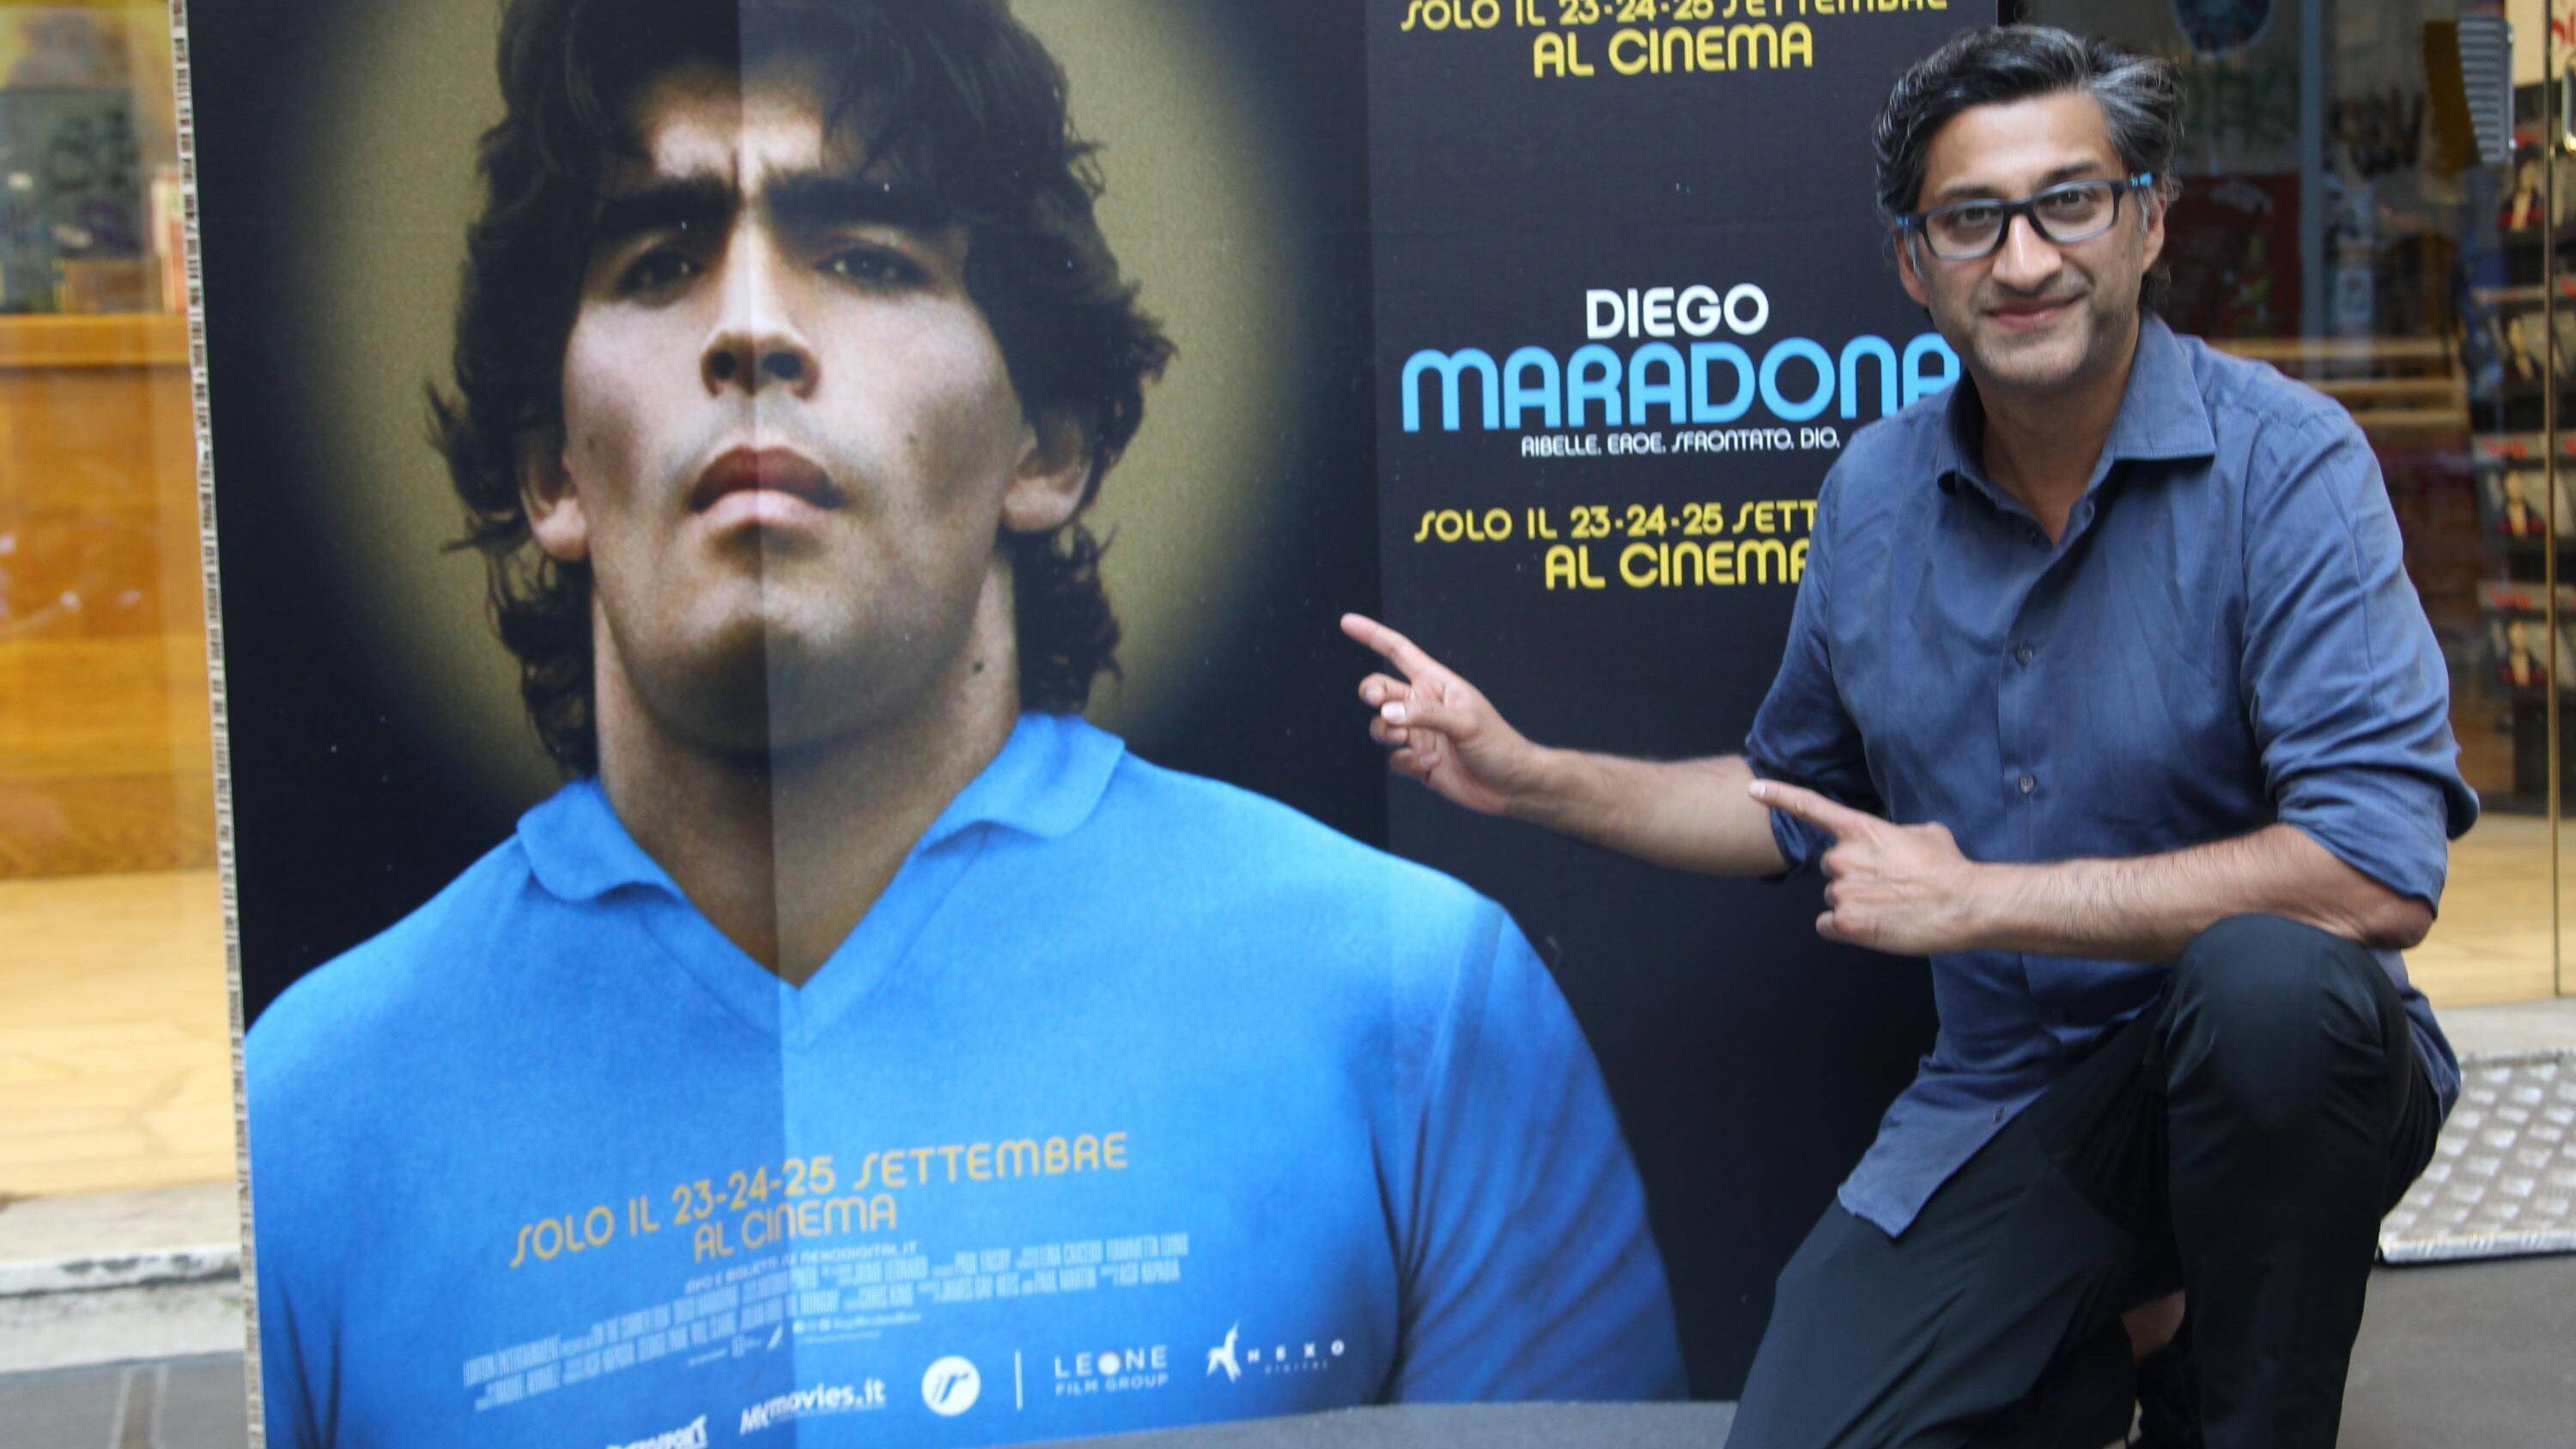 
                <strong>Diego Maradona</strong><br>
                Doch nicht nur das Leben der aktuellen Fußballstars wurde verfilmt. Auch Legenden wie Diego Maradona oder Pele wurden auf der Leinwand abgebildet. Regisseur Asif Kapadia standen über 500 Stunden Rohmaterial aus dem persönlichen Archiv von Maradona zur Verfügung. Heraus kam ein knapp zweistündiger Film über das bewegte Leben des am 25. November 2020 verstorbenen Argentiniers.
              